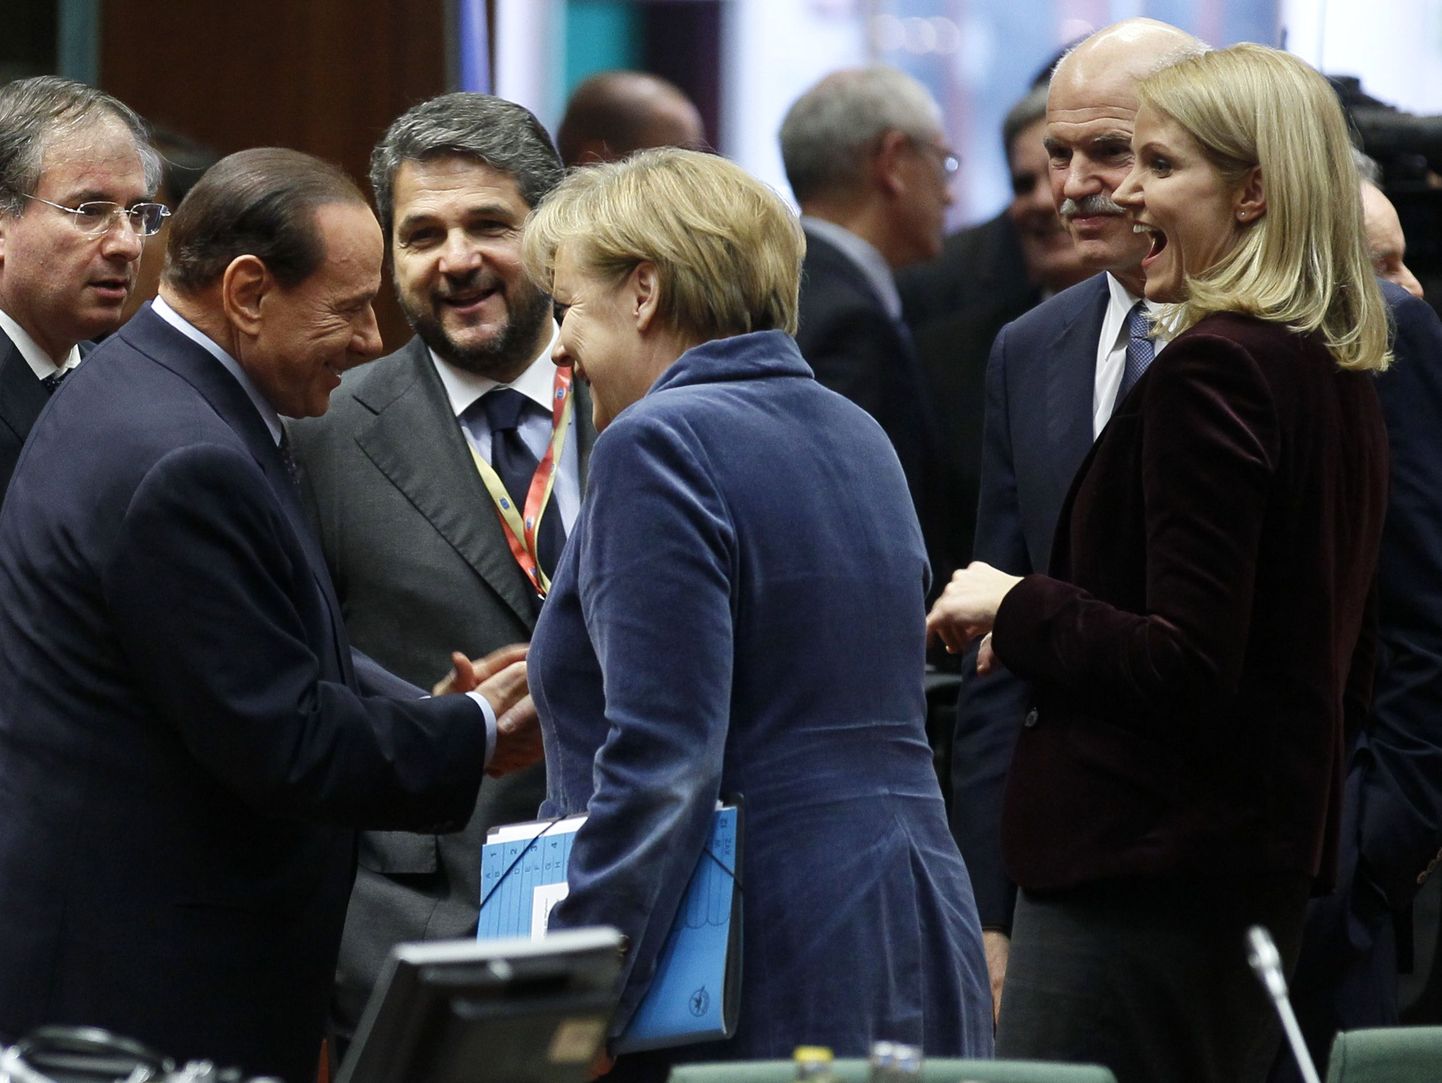 Itaalia peaminister Silvio Berlusconi ja Saksa kantsler Angela Merkel kolmapäeval Brüsselis erakorralisel ülemkogul.